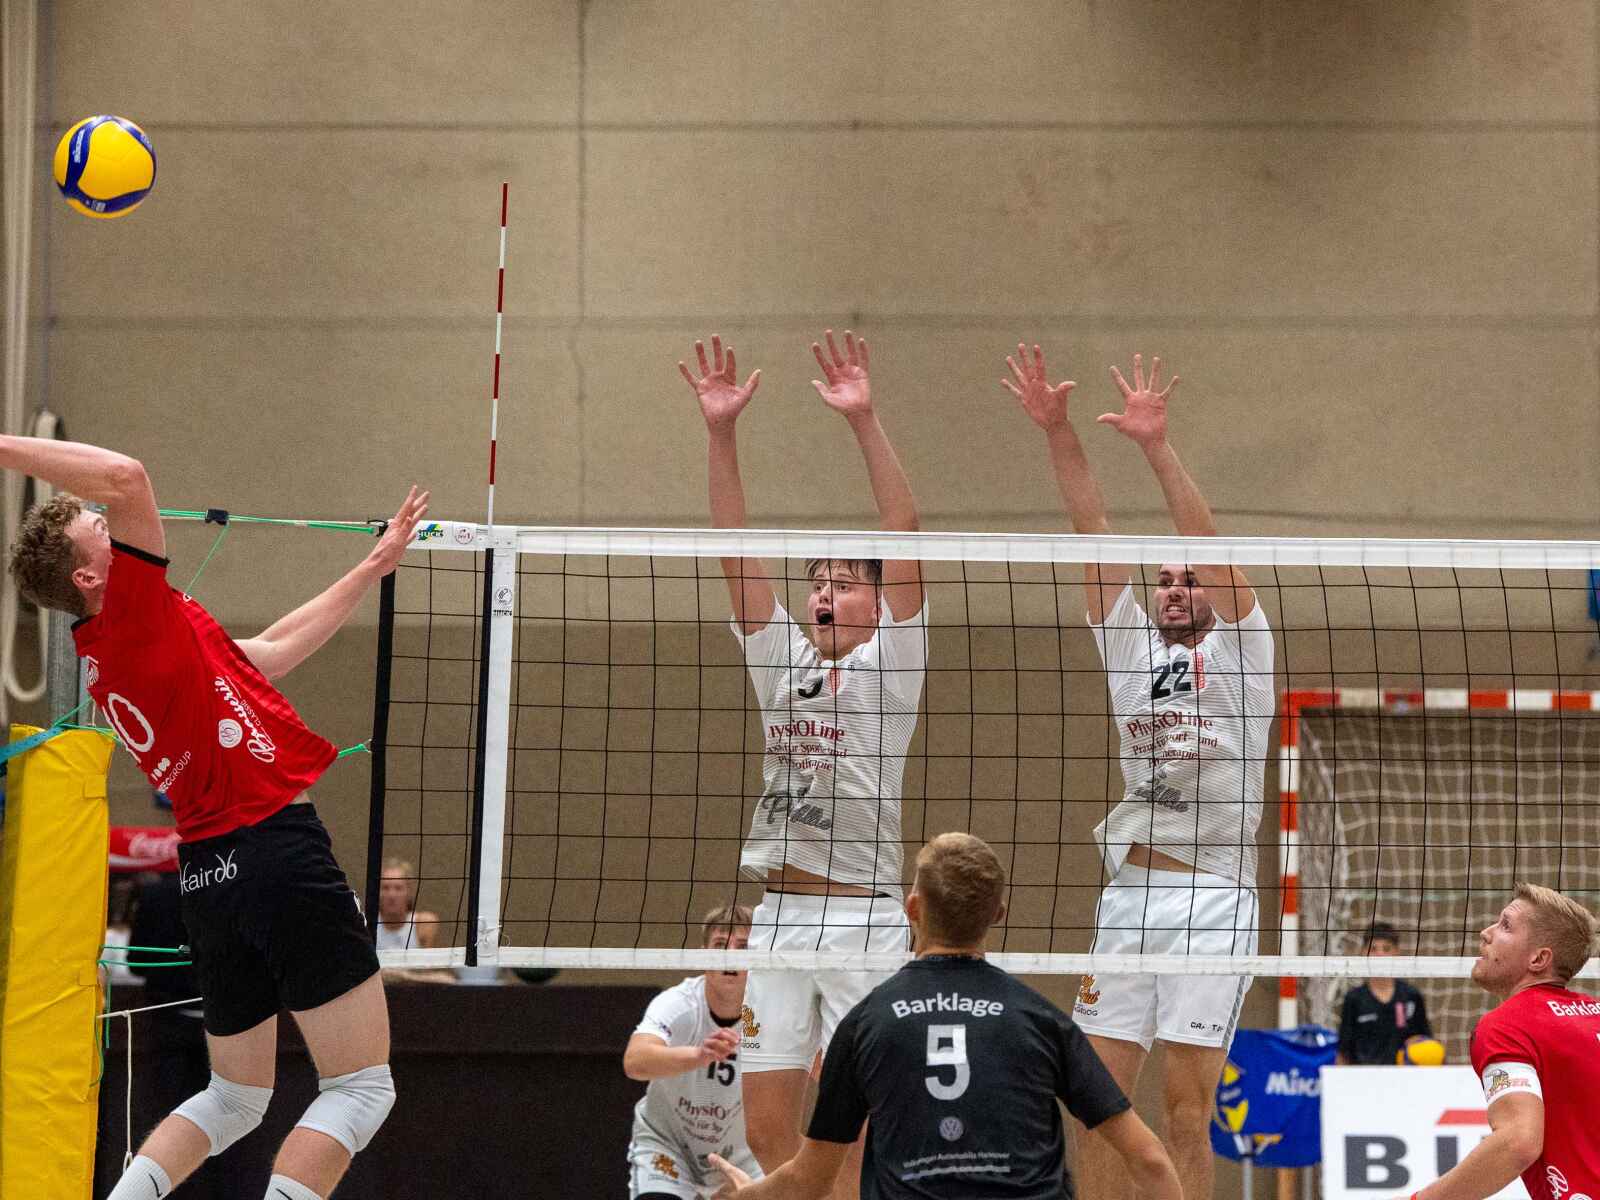 Dritte Liga im Volleyball Oldenburger TB verliert auch bei Brühler TV